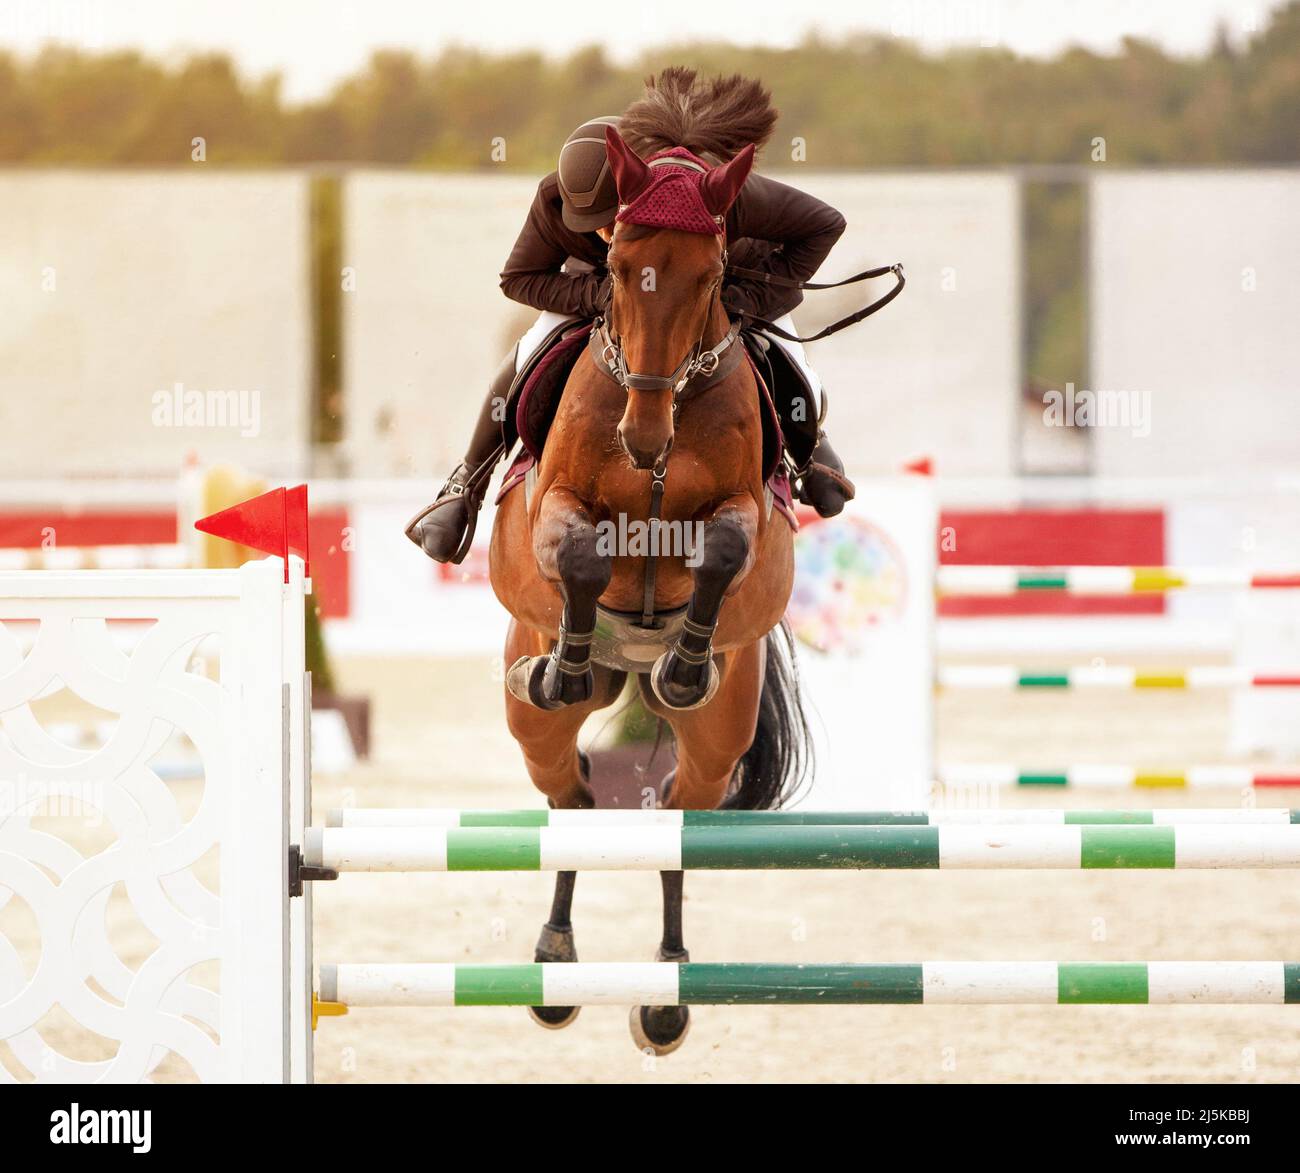 Il jockey su cavallo marrone supera un ostacolo. Gara di salto. Campione. Equitazione. Sport equestre. Cavallo equestre. Poster dello sport Foto Stock